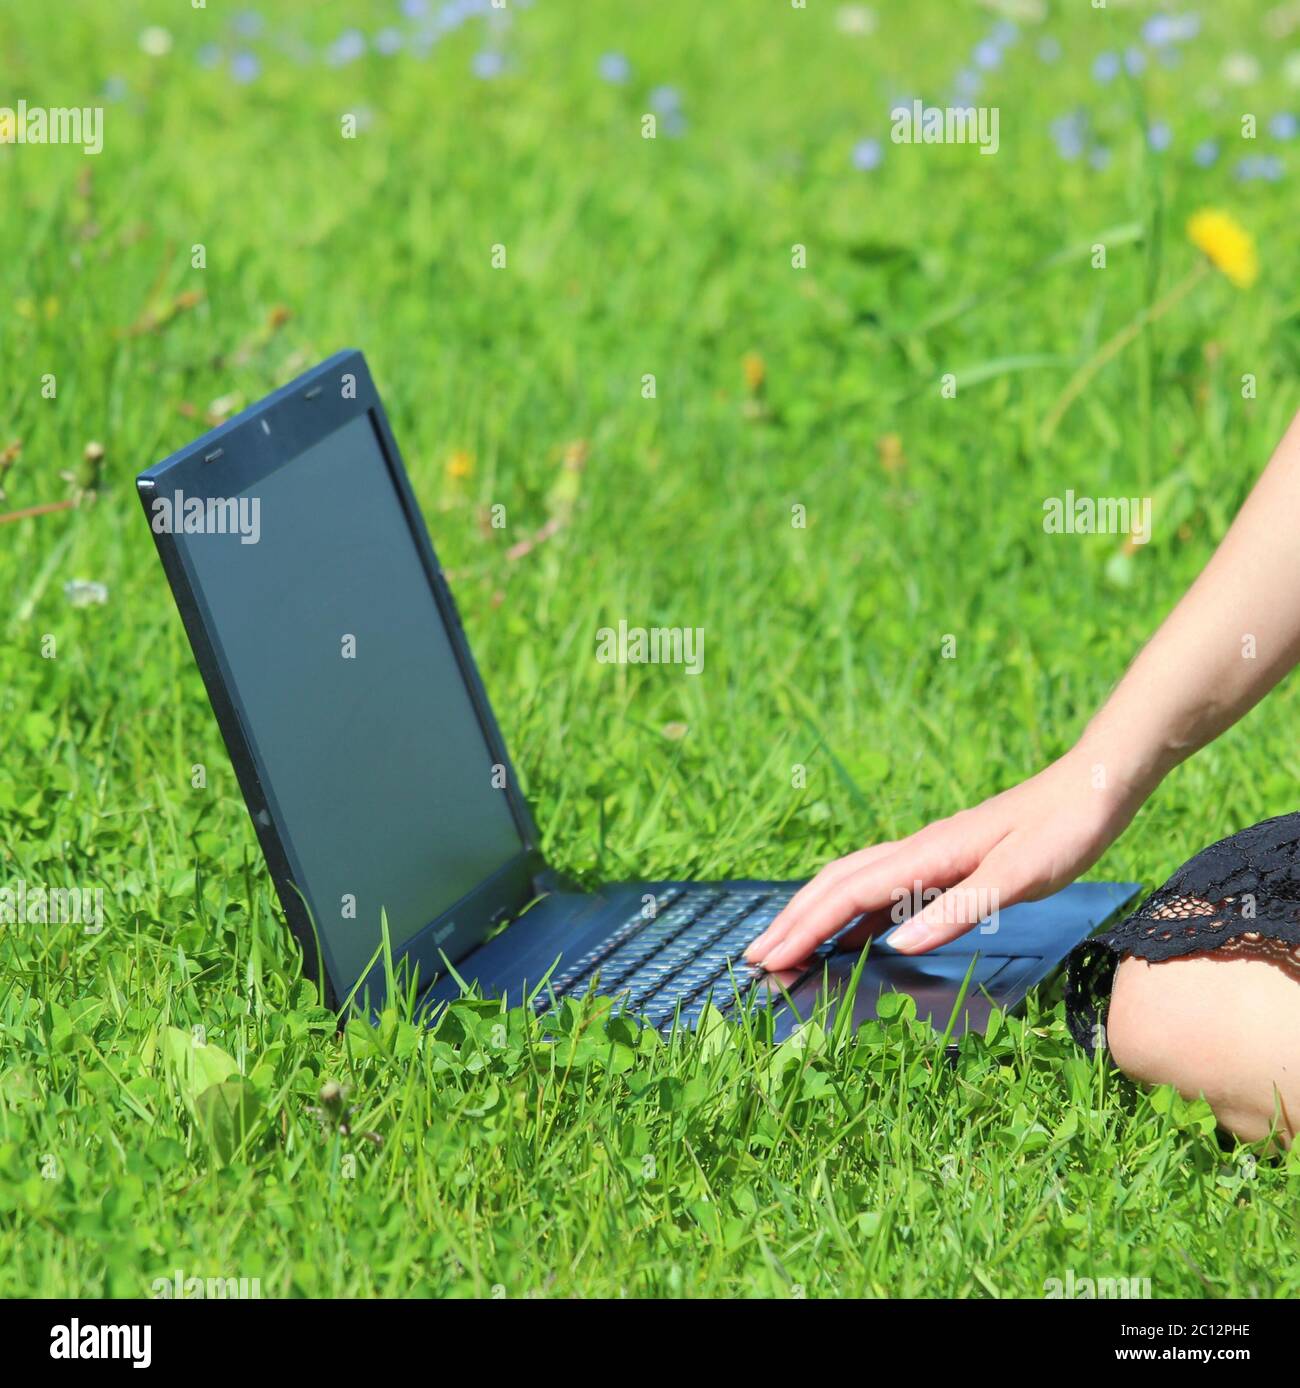 Der Laptop ist auf dem grünen Gras, das Mädchen arbeitet am Computer auf dem Rasen. Die Hand des Mannes ist auf der Tastatur. Stockfoto